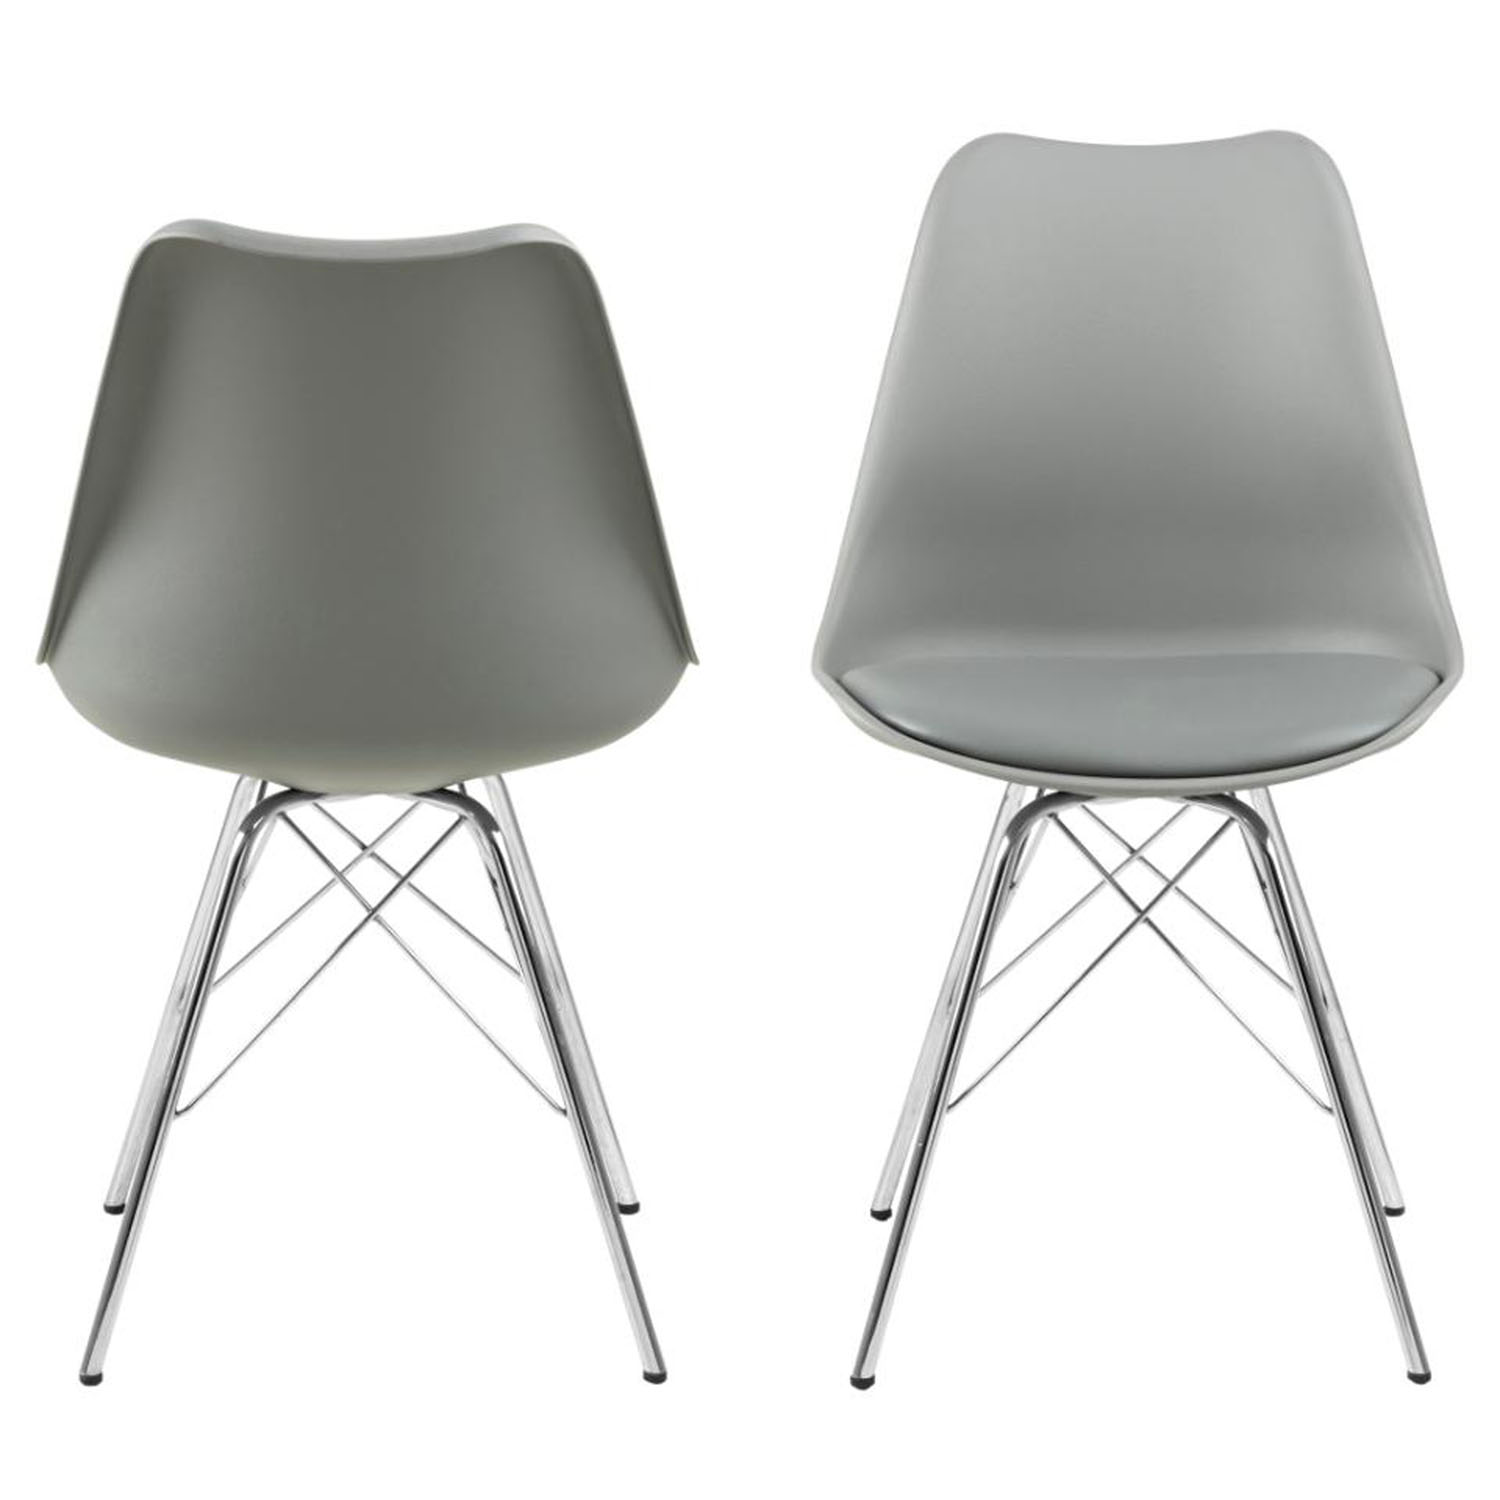 ACT NORDIC Eris spisebordsstol - grå plastik, grå PU og krom metal